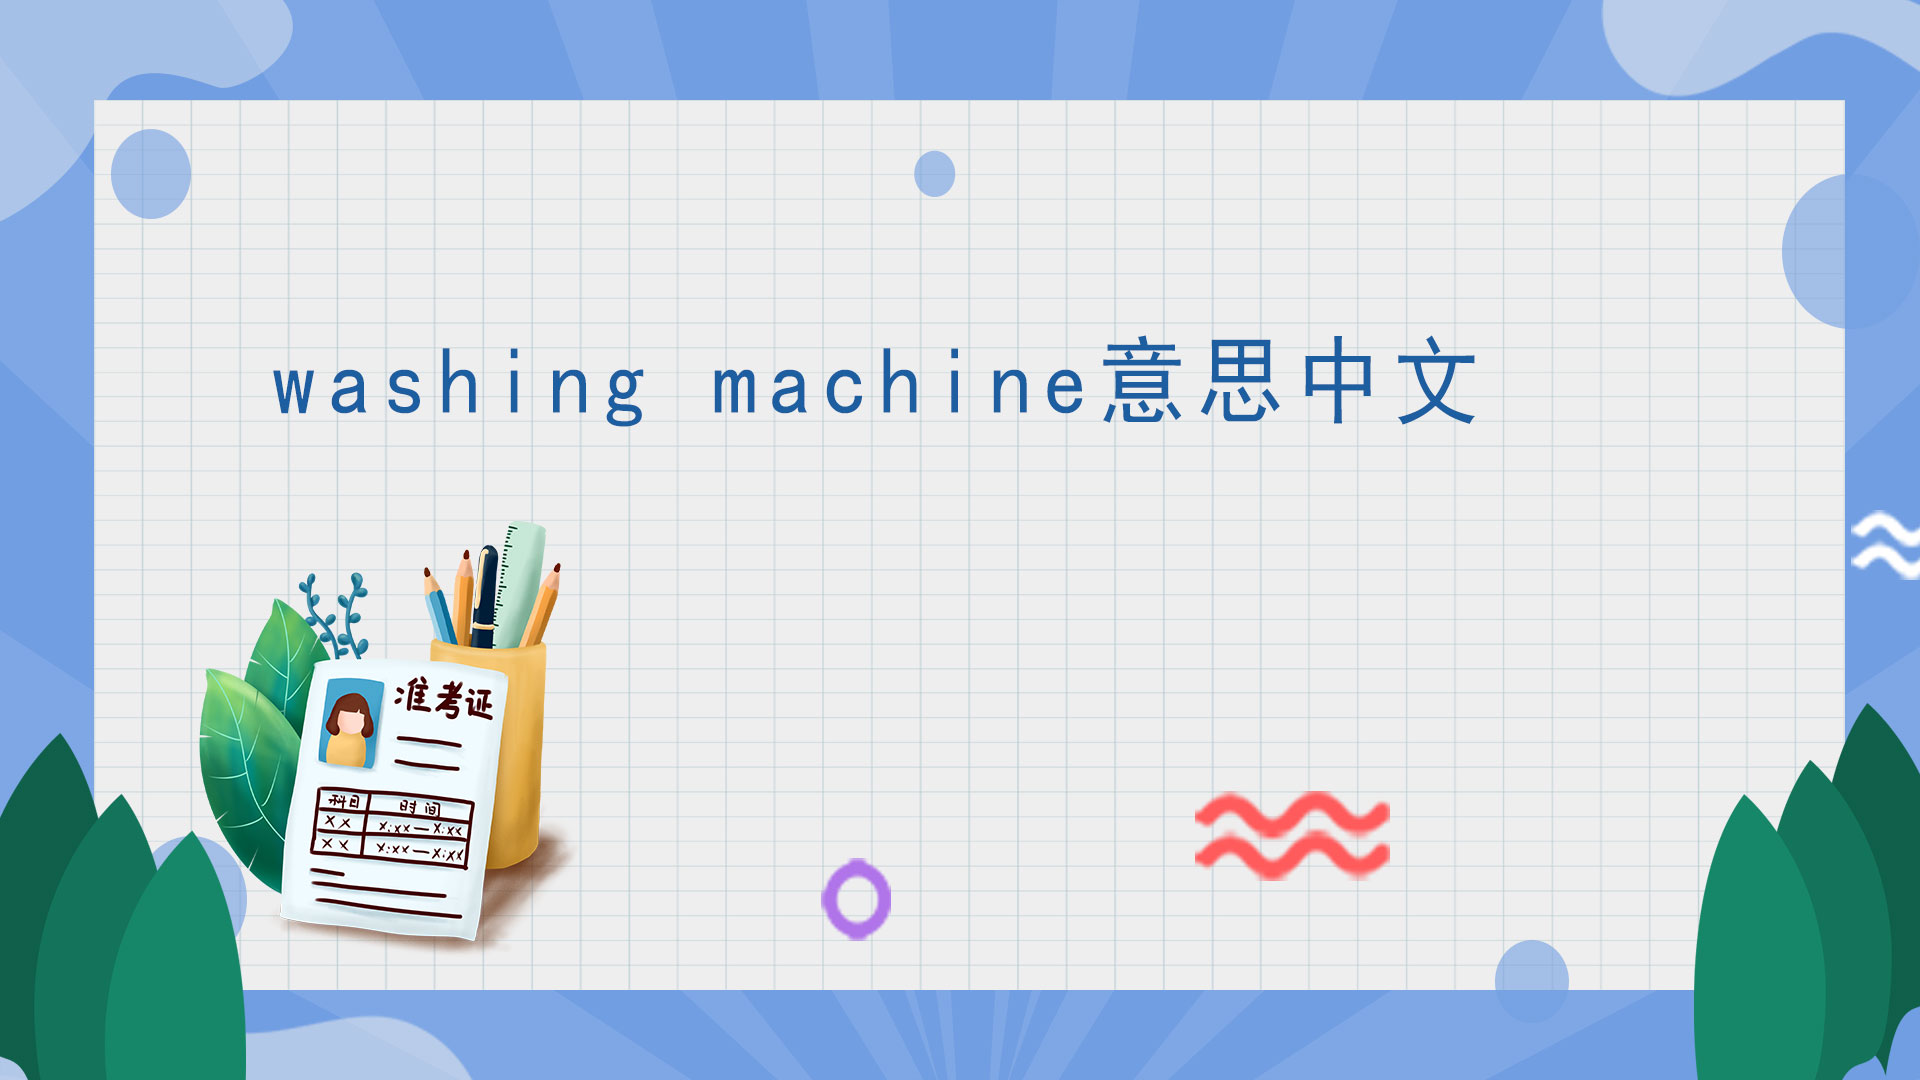 washing machine中文意思是什么